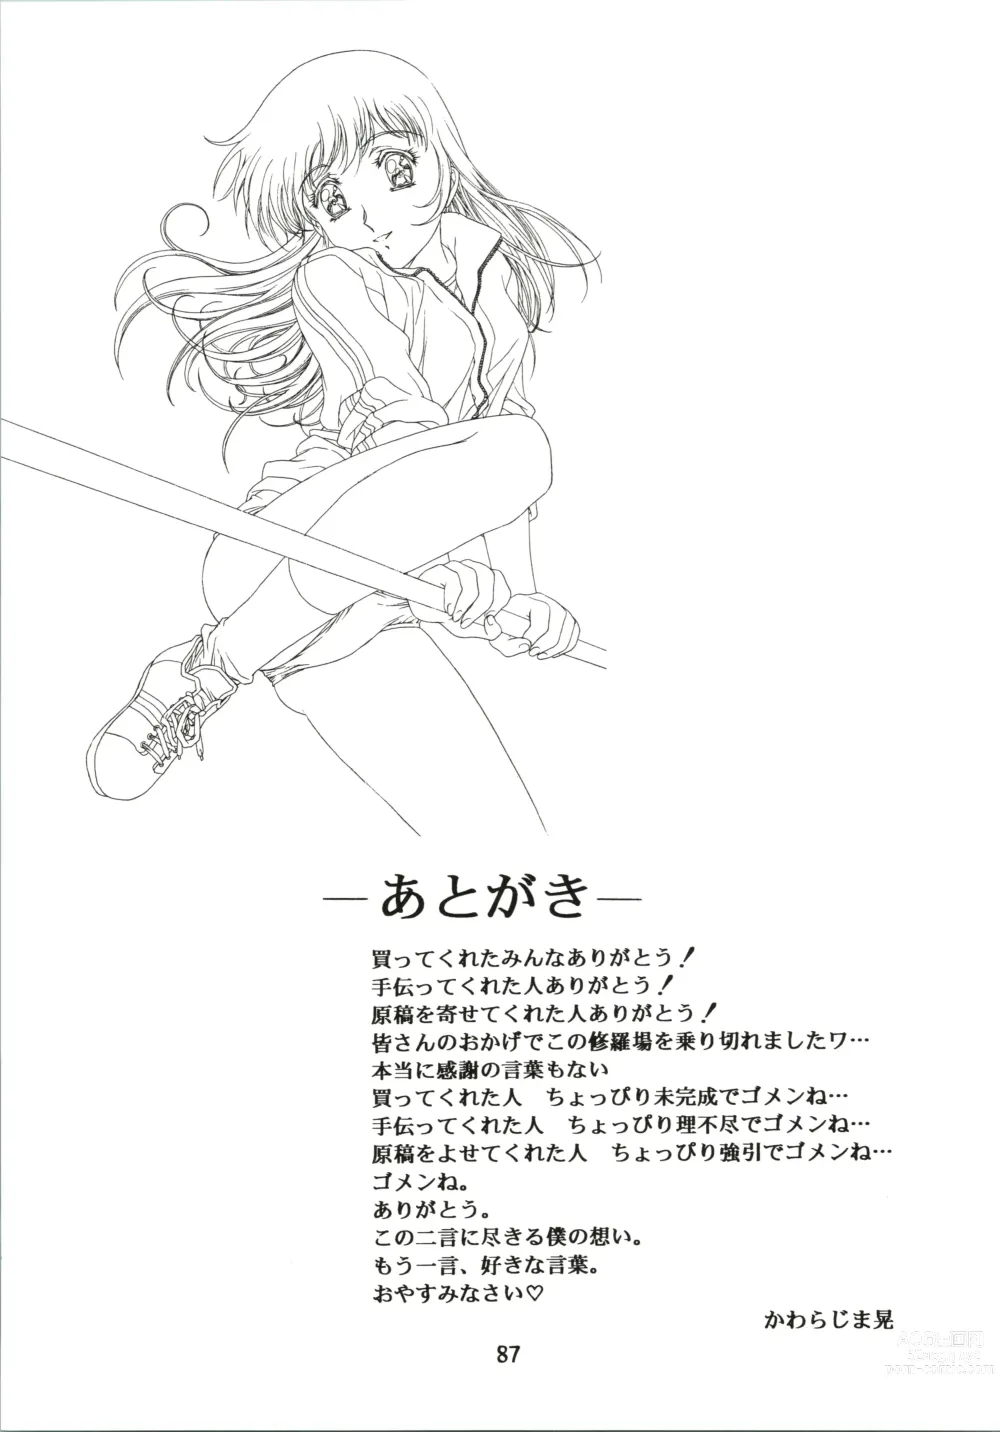 Page 87 of doujinshi Sakura Ame